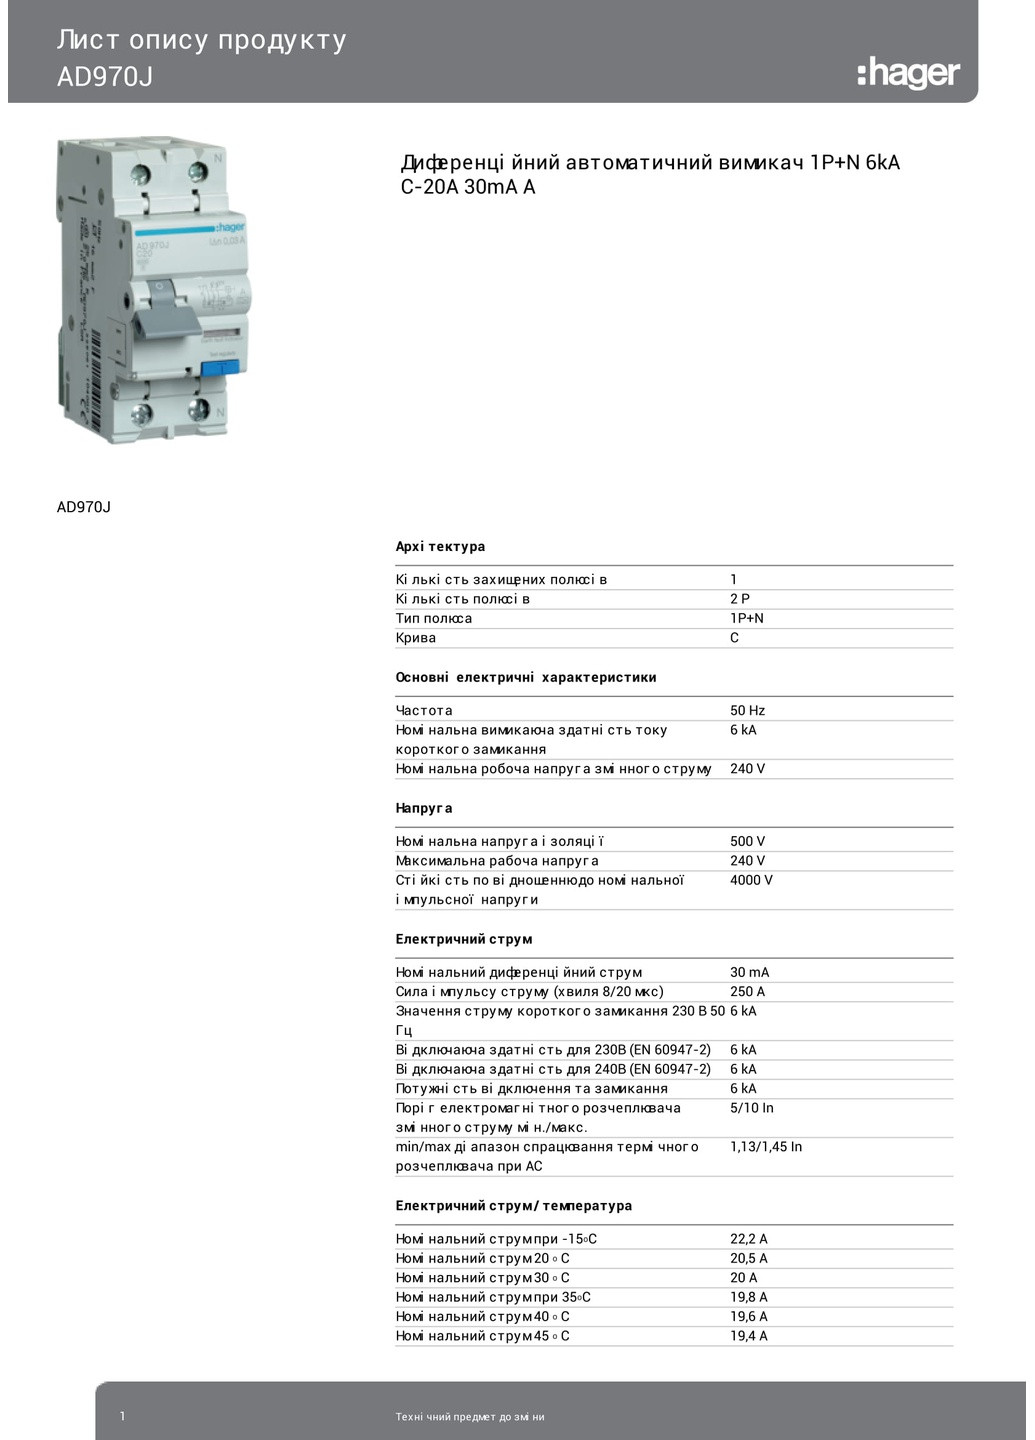 Дифференциальный автоматический выключатель AD970J 1P+N 6kA C20A 30mA тип A дифавтомат (3311) Hager (265535294)